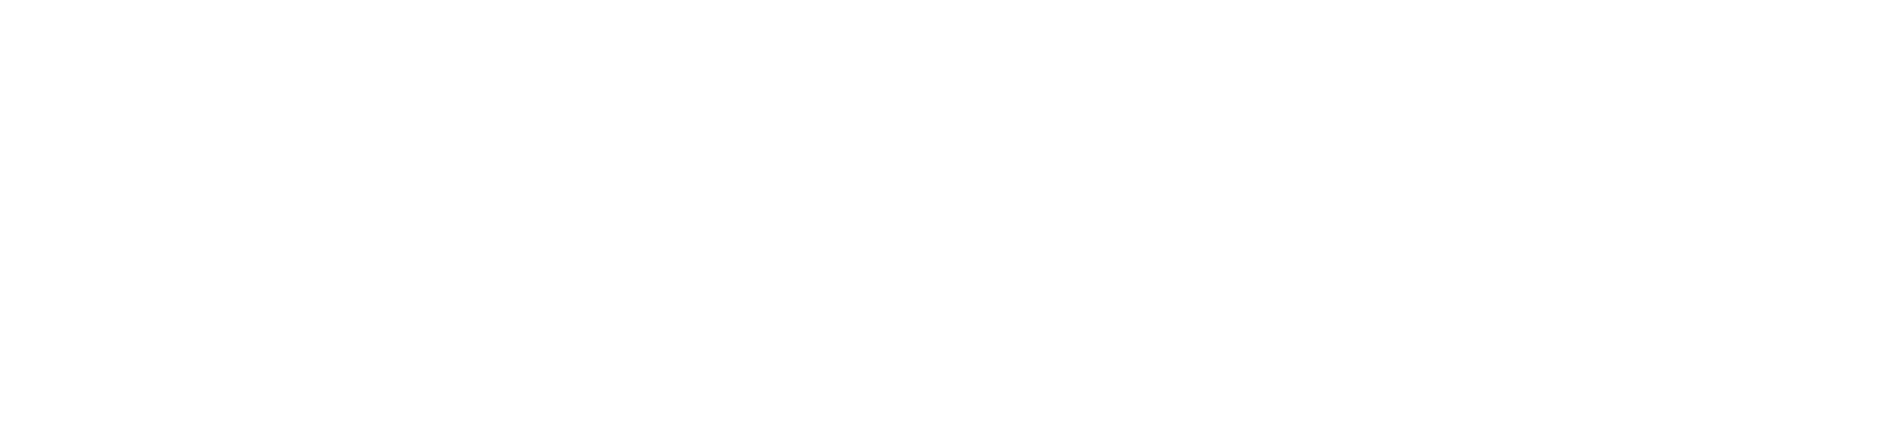 ZwickRoell Logo All White